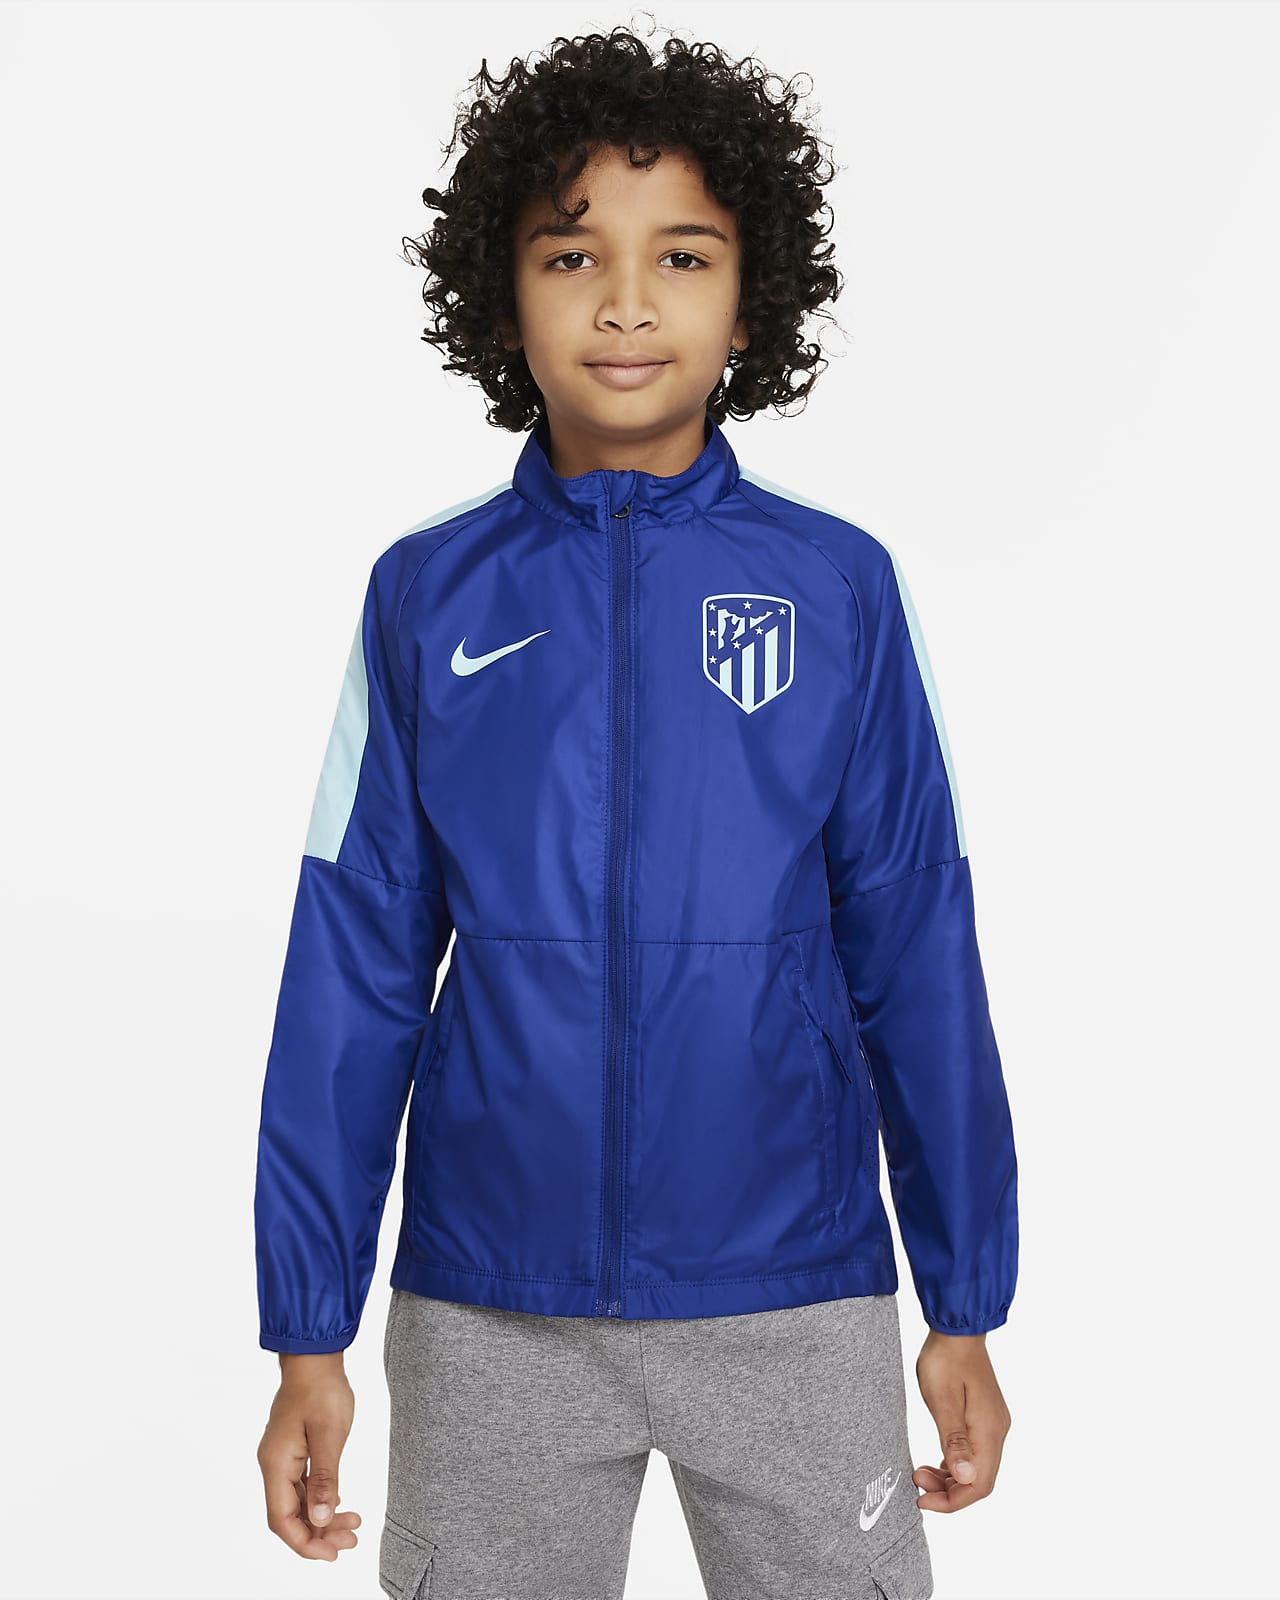 Atlético Madrid Repel Academy AWF Older Kids' Football Jacket